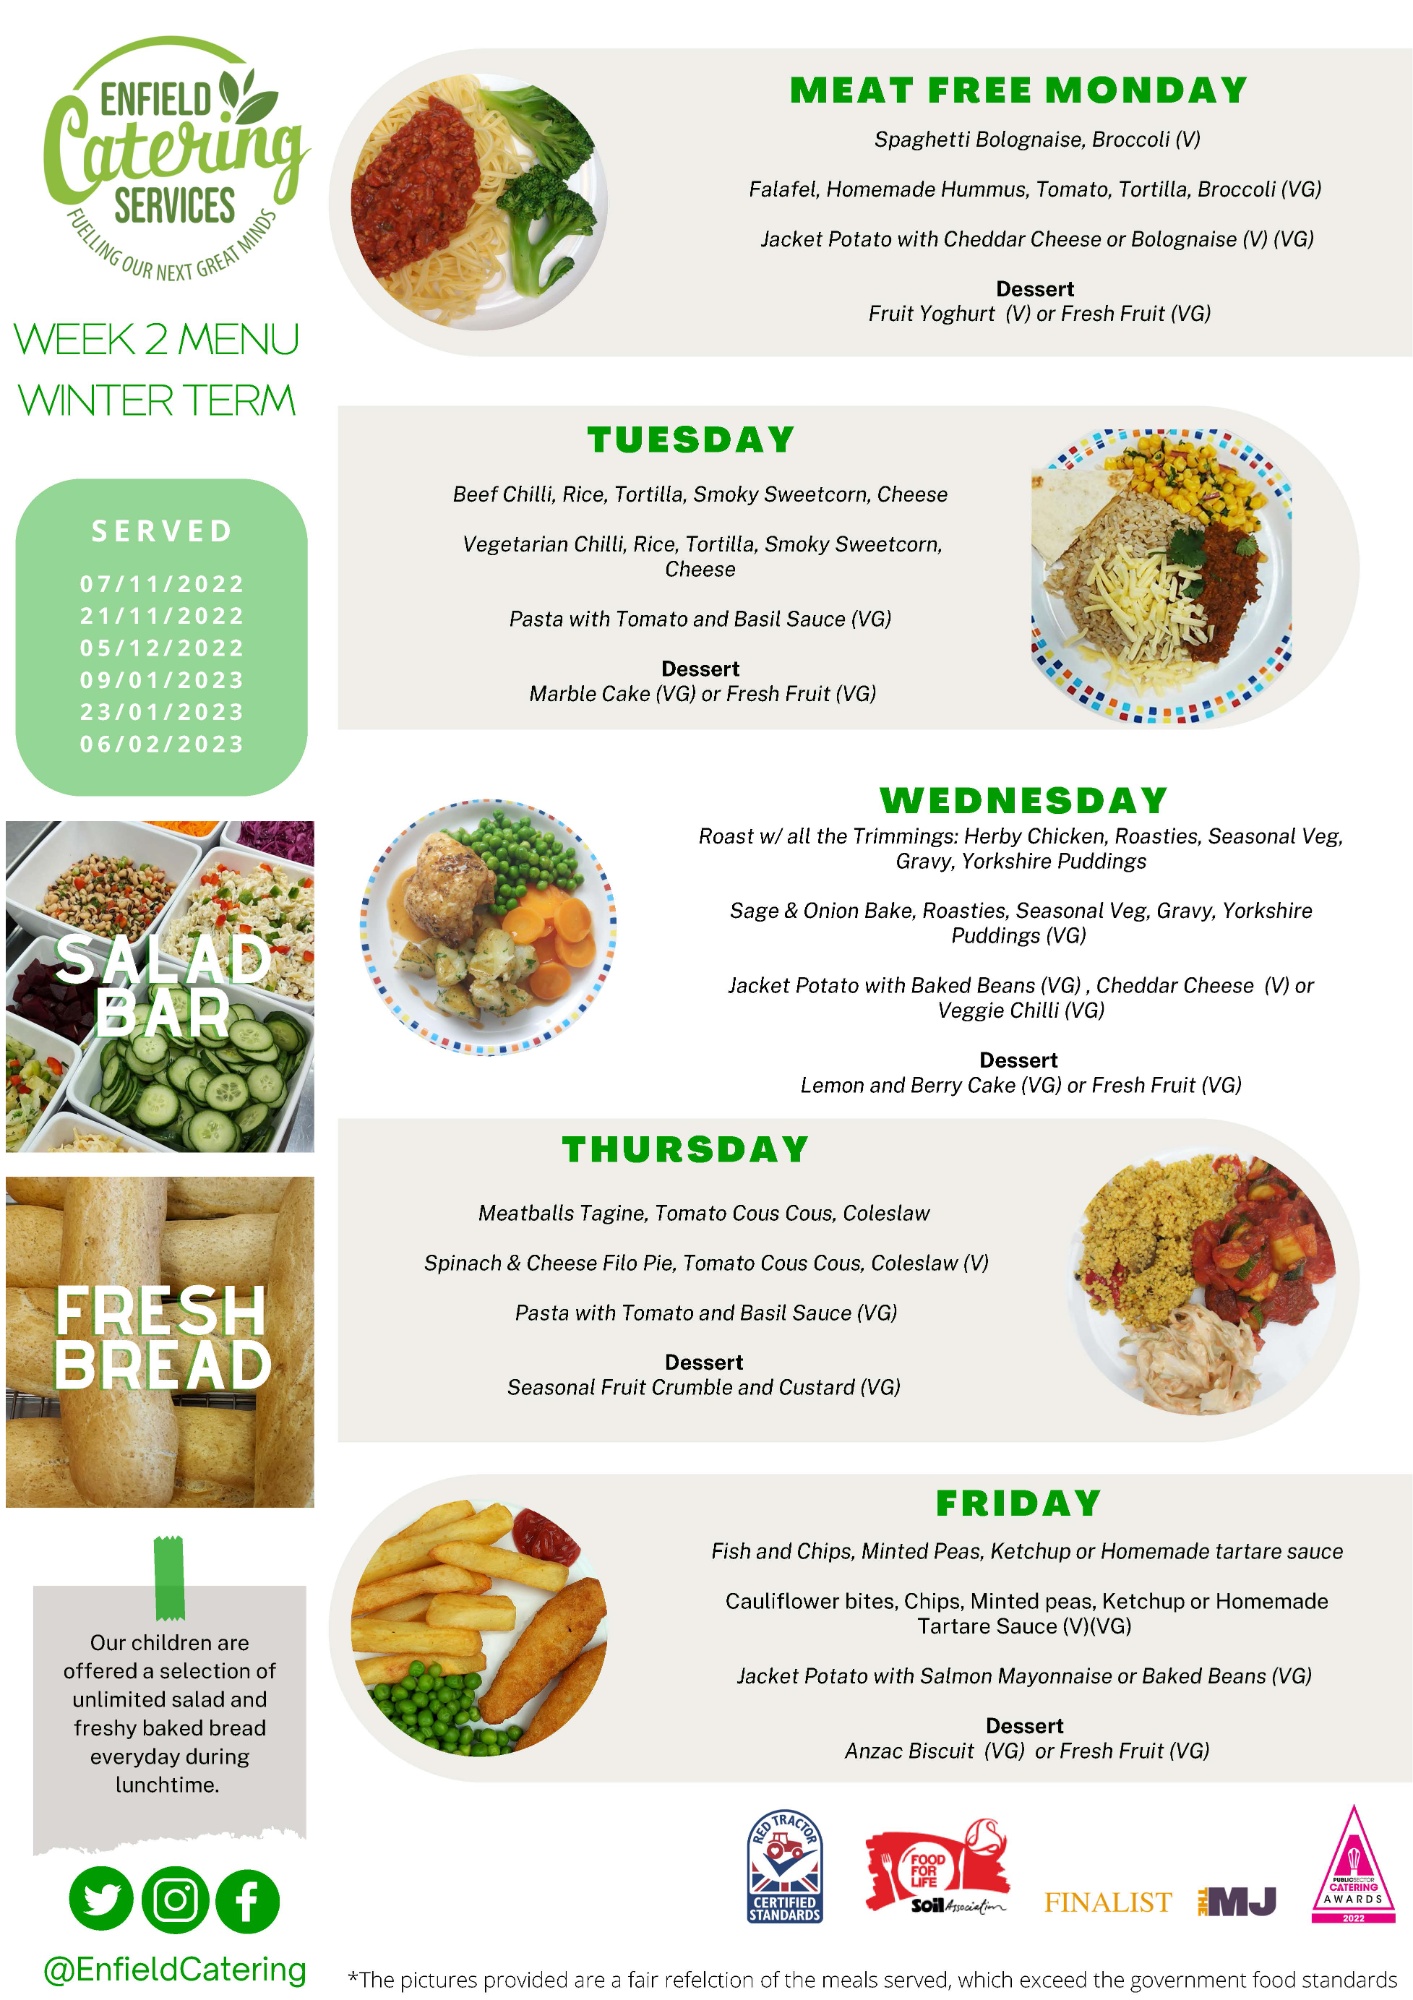 Enfield Catering Service Week 1 menu